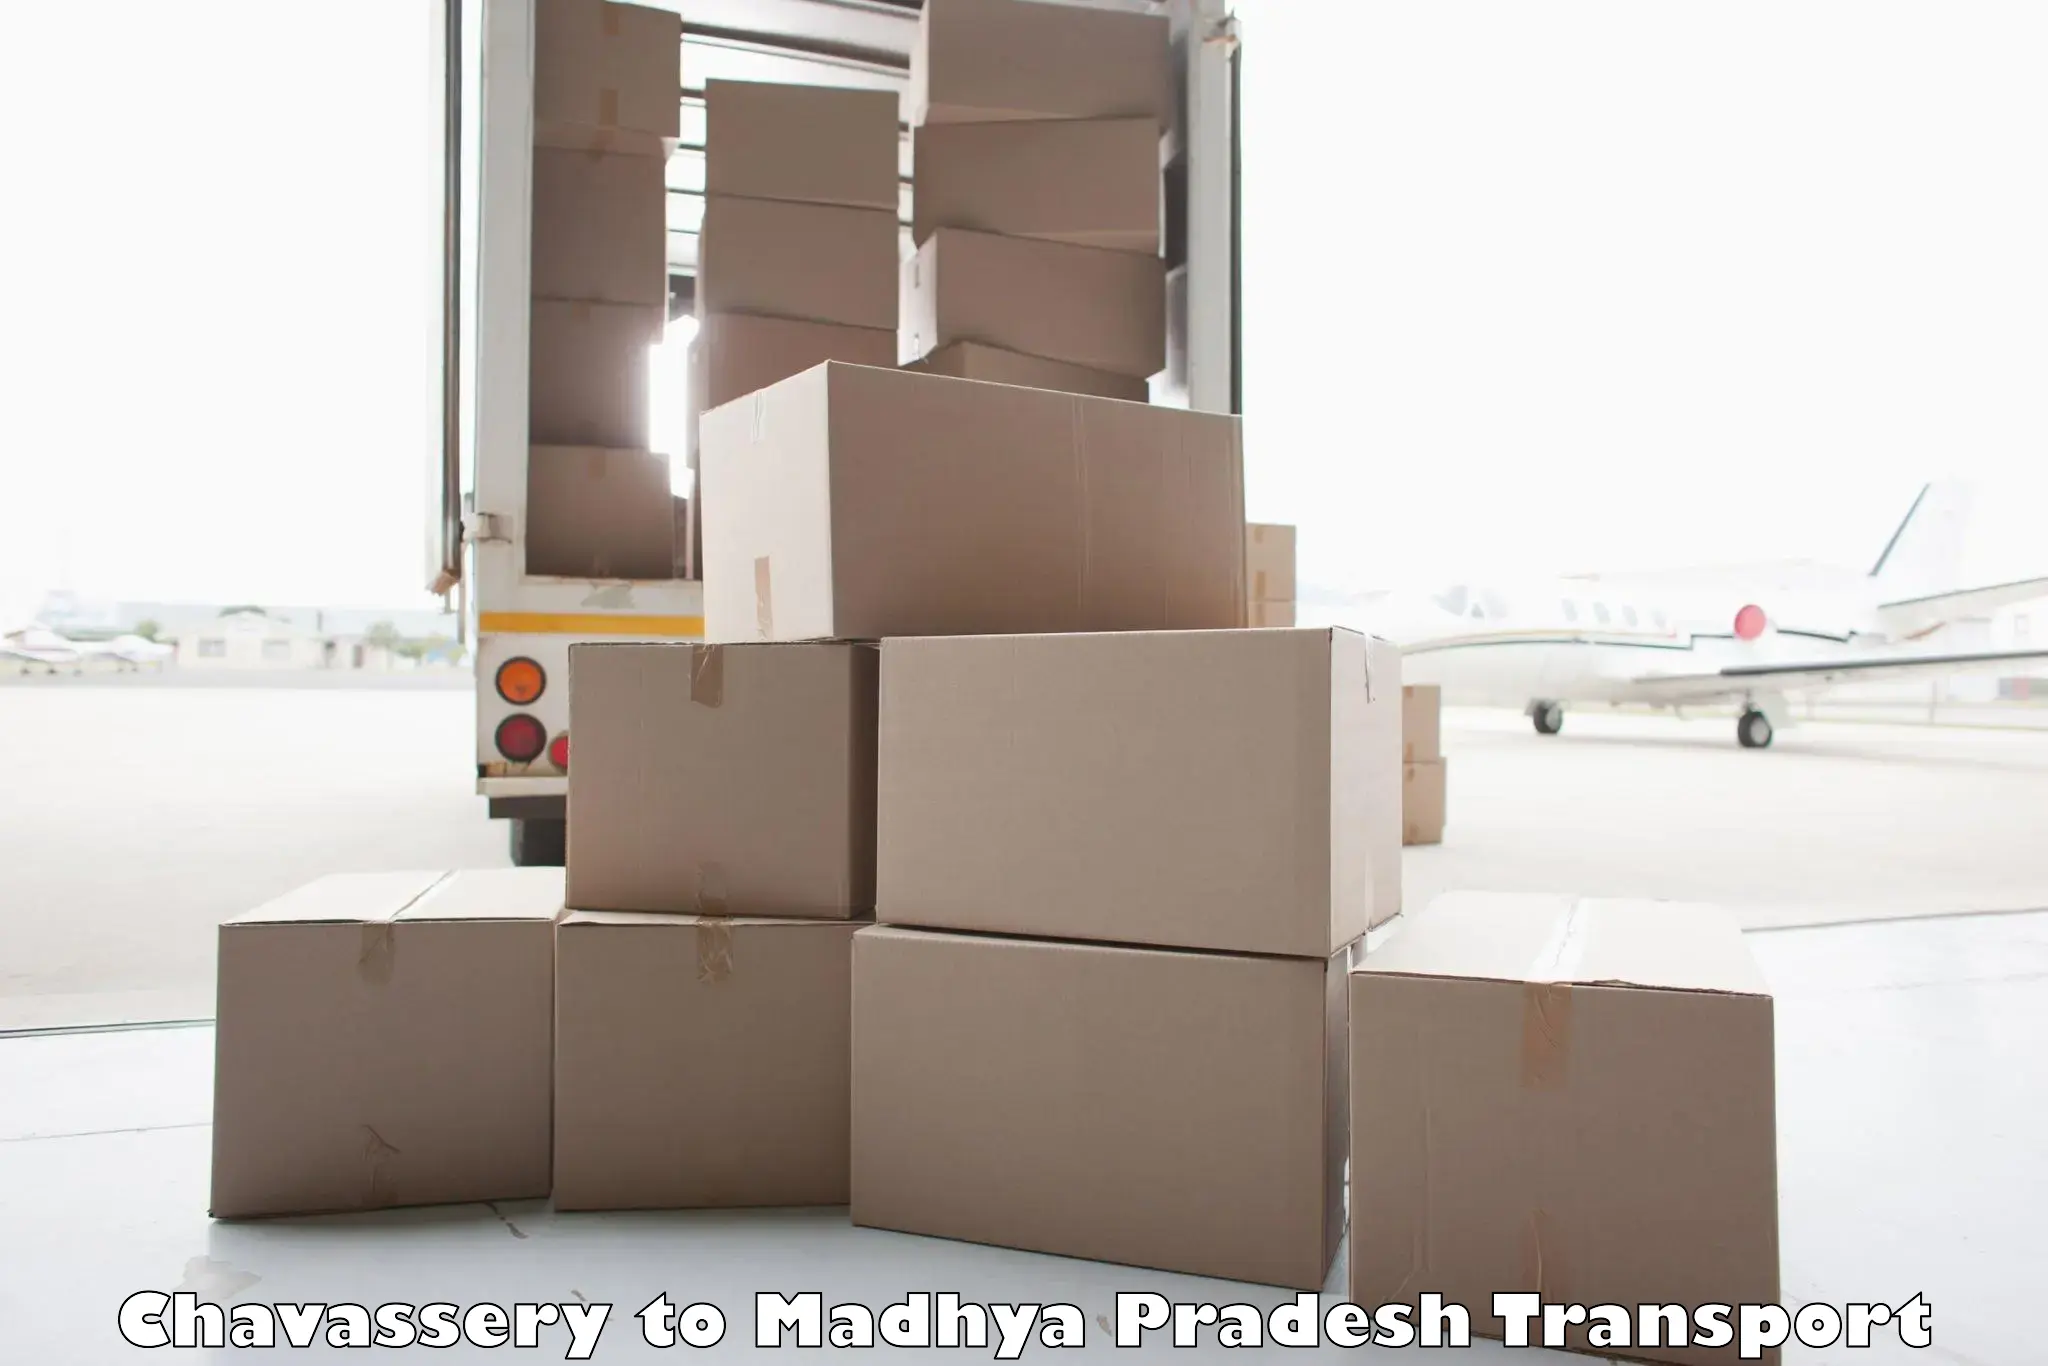 Nearest transport service Chavassery to Satna